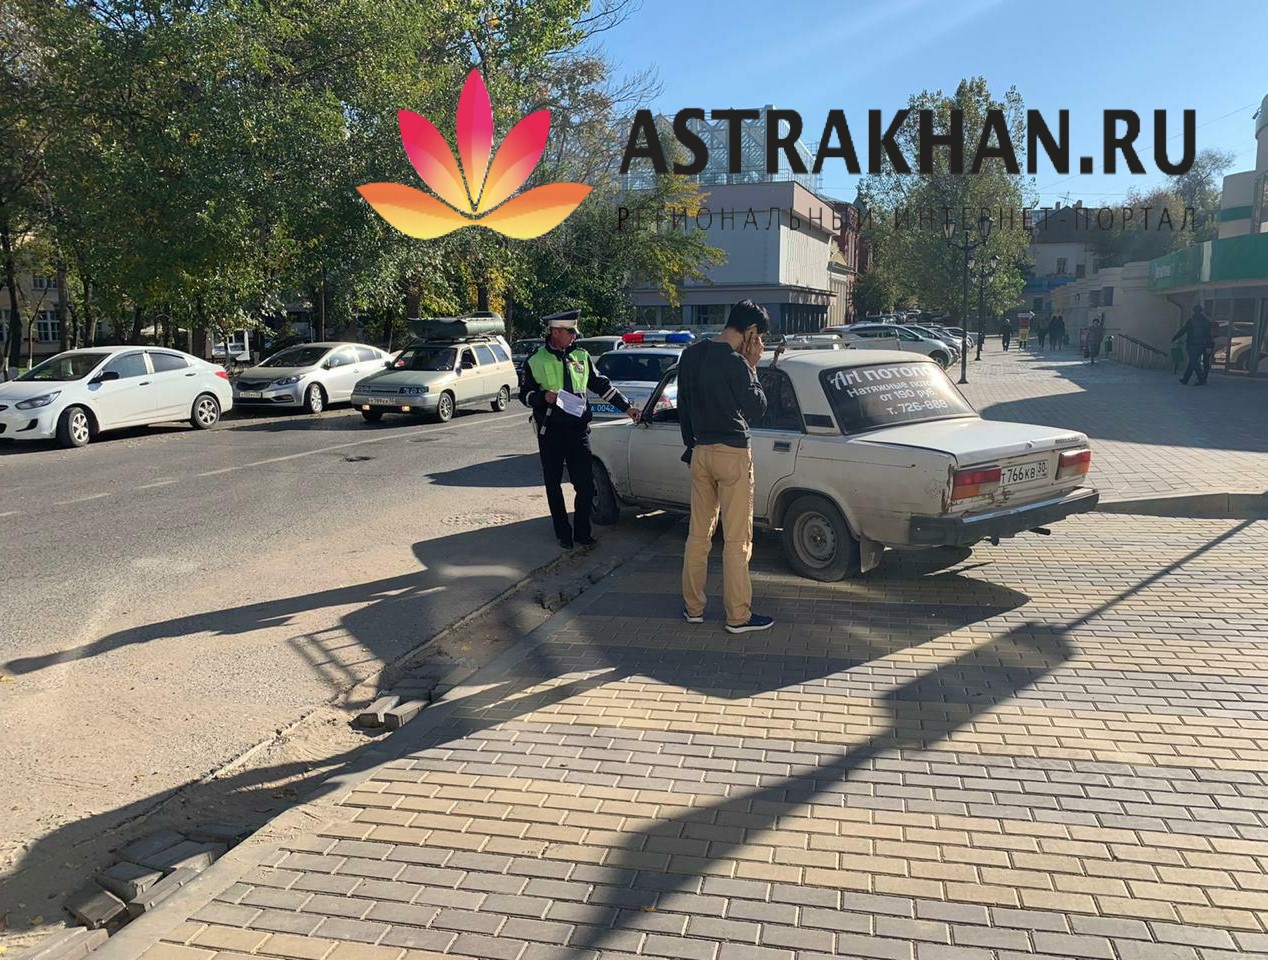 На улице Ахматовской начали штрафовать нарушителей